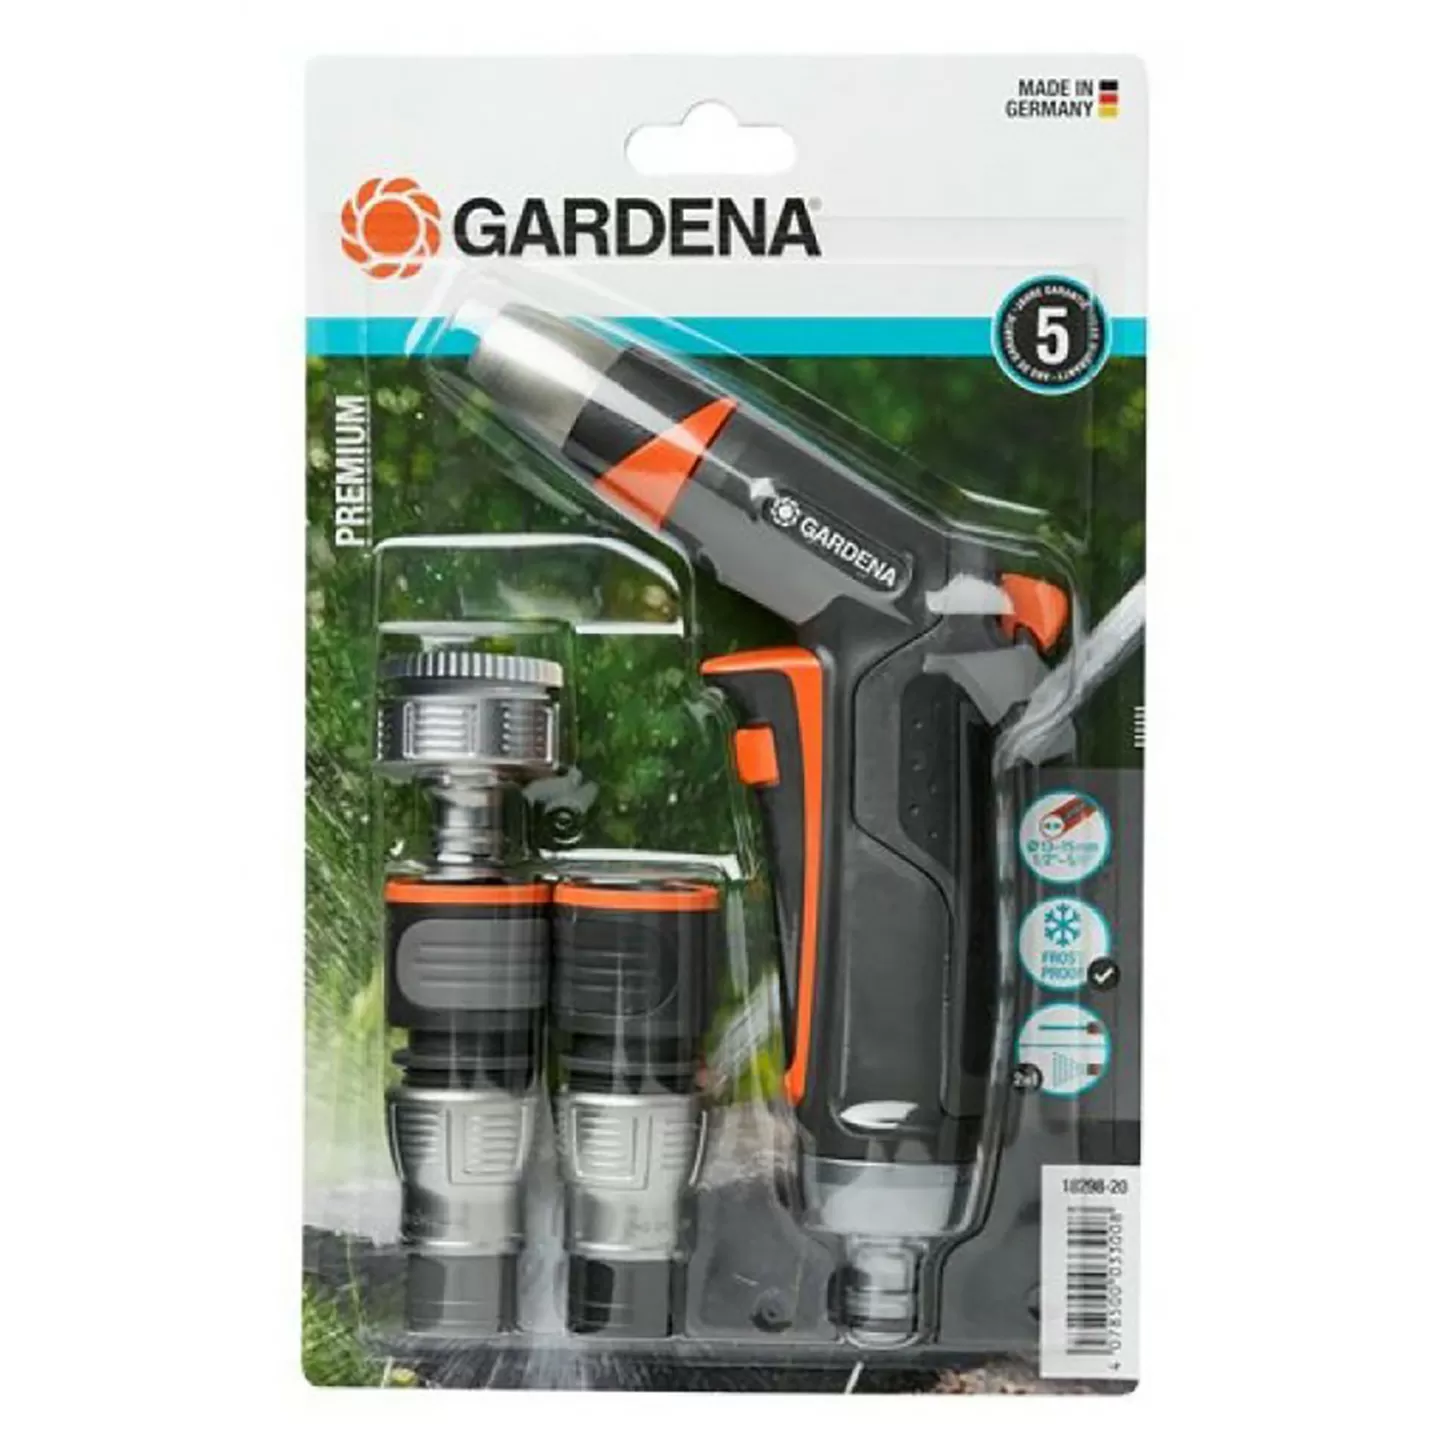 Gardena - Gardena 18298-20 Premium Temel Set